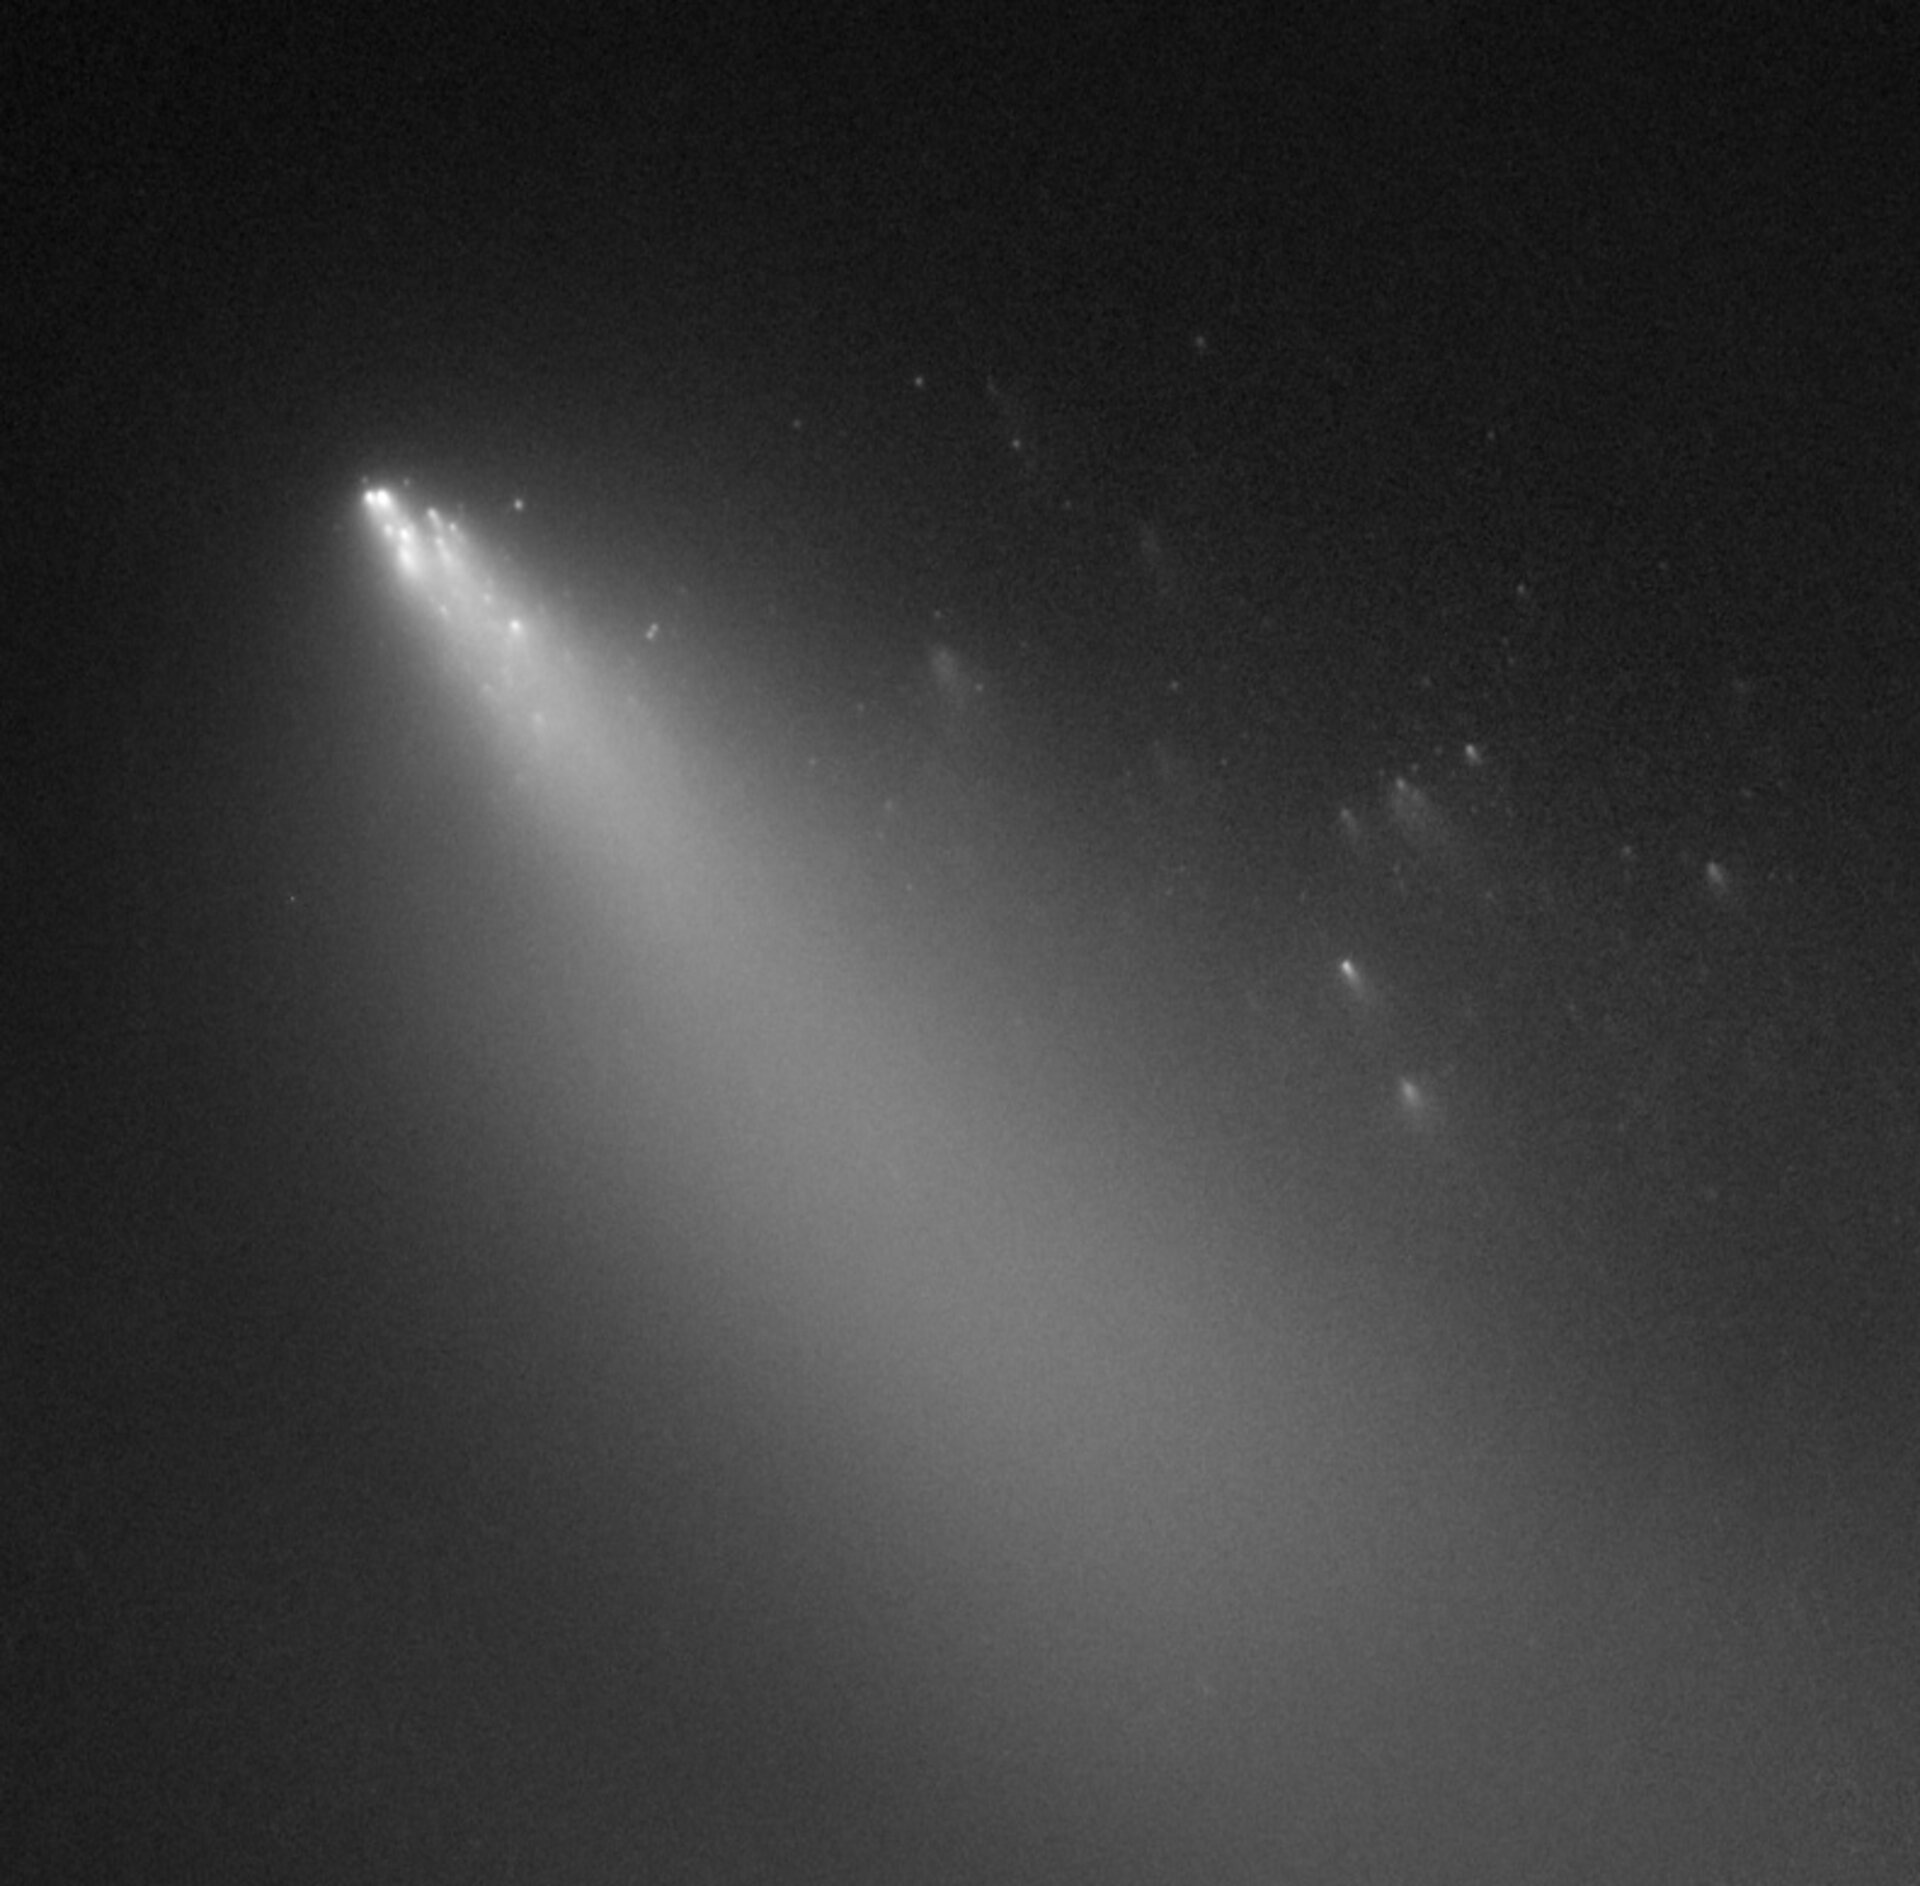 Fragment 'G' of Comet 73P/Schwassmann-Wachmann 3